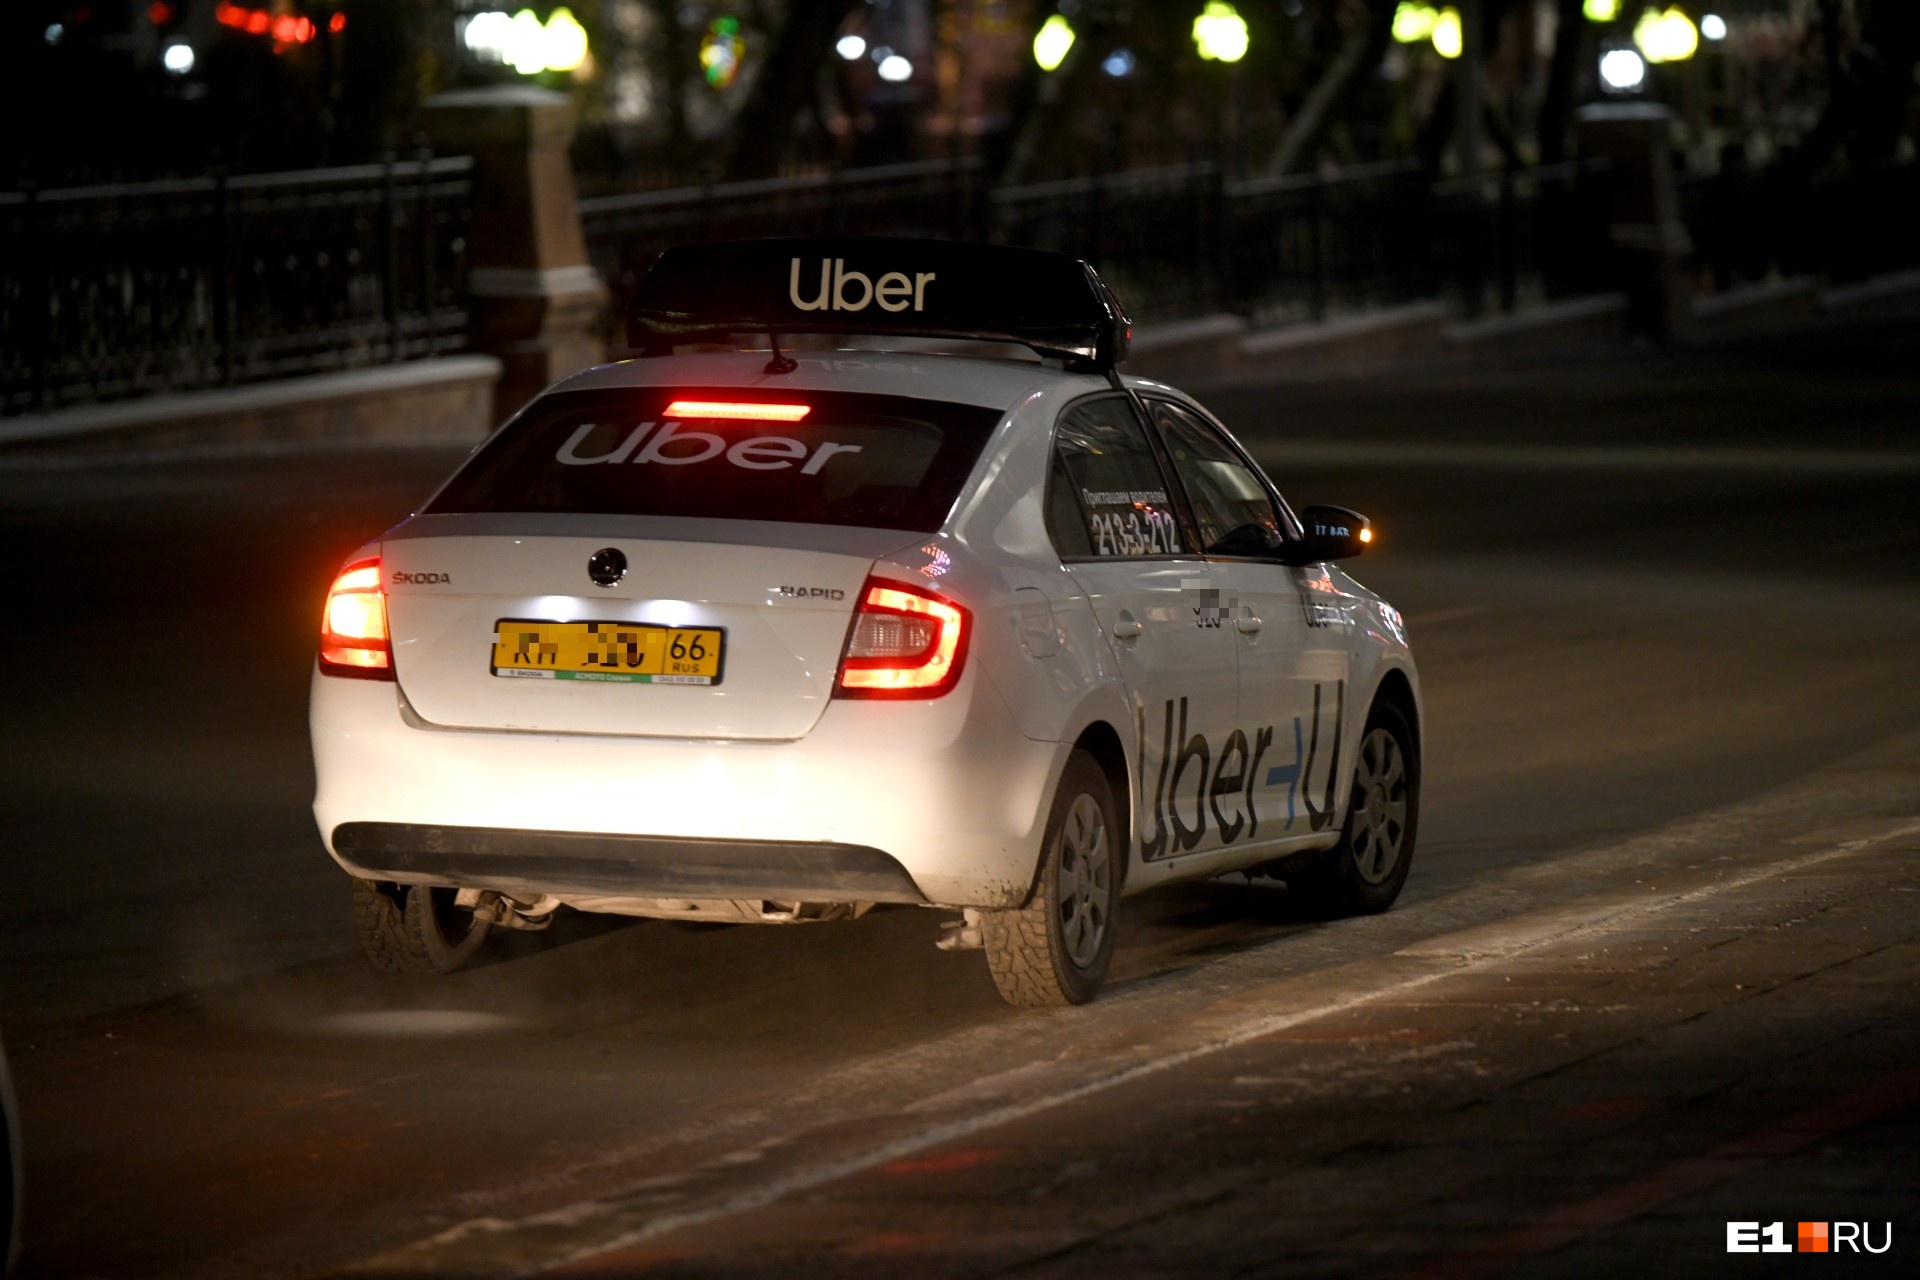 «Это моя безопасность»: в Екатеринбурге водитель такси выгнал пассажира из-за просьбы пристегнуться